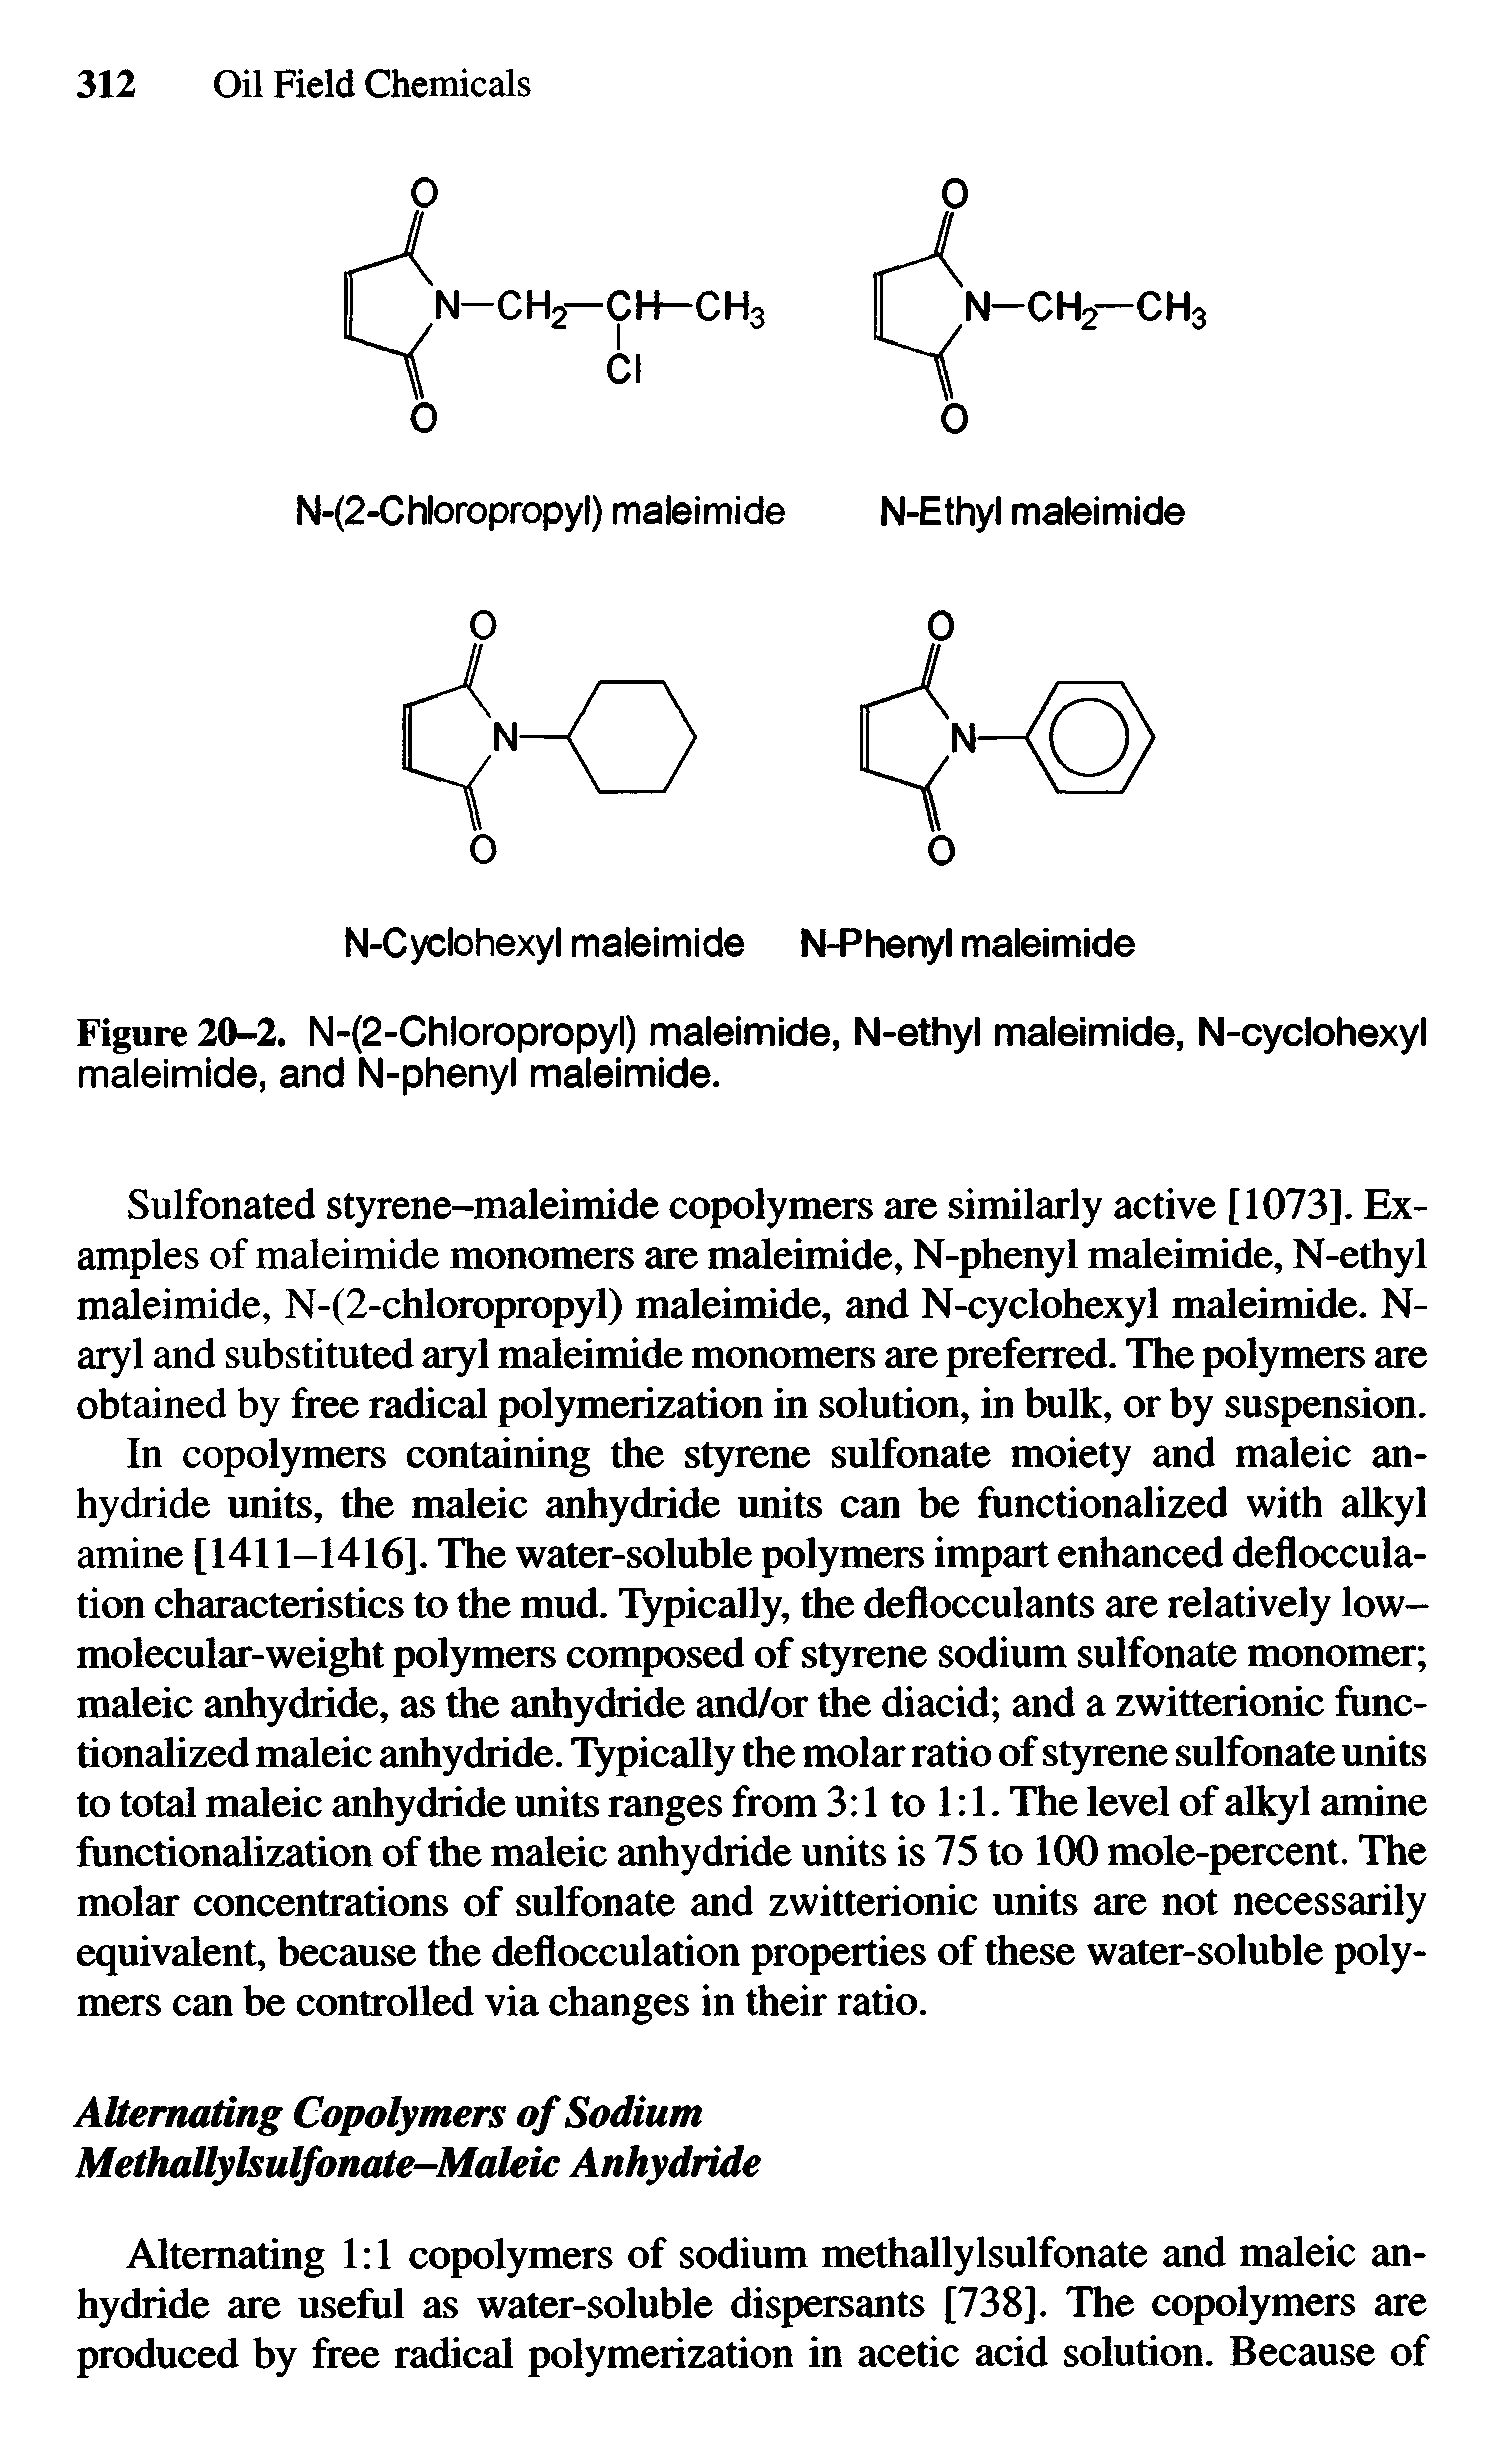 Figure 20-2. N-(2-Chloropropyl) maleimide, N-ethyl maleimide, N-cyclohexyl maleimide, and N-phenyl maleimide.